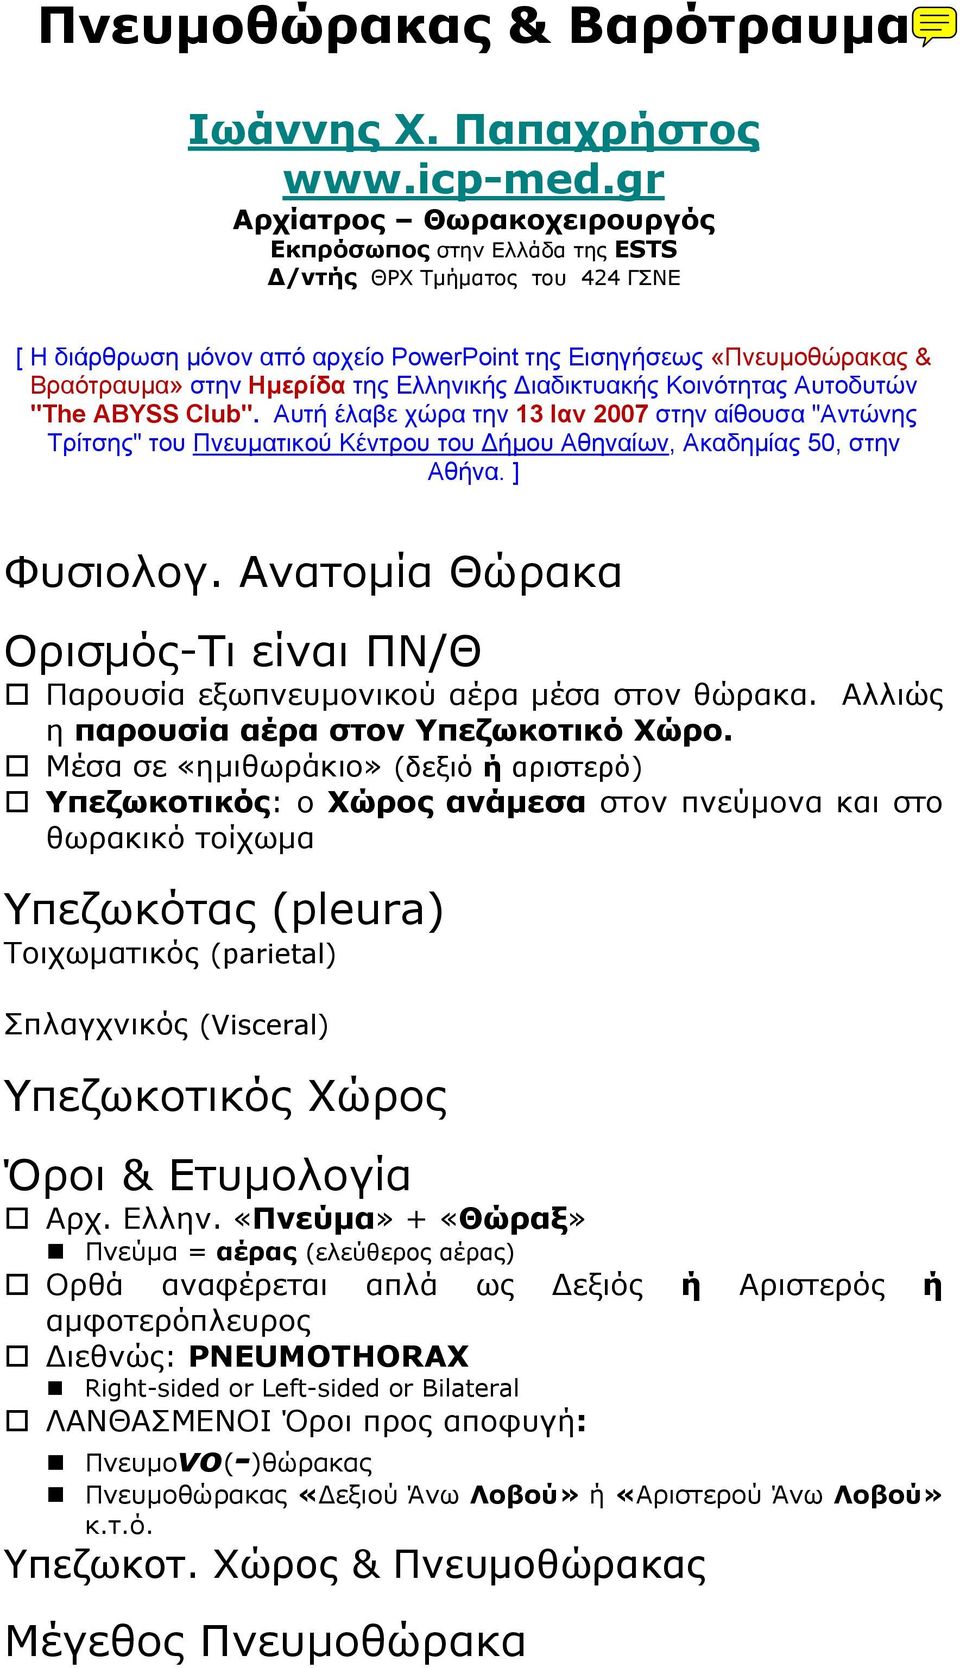 Ελληνικής Διαδικτυακής Κοινότητας Αυτοδυτών "The ABYSS Club". Αυτή έλαβε χώρα την 13 Ιαν 2007 στην αίθουσα "Αντώνης Τρίτσης" του Πνευματικού Κέντρου του Δήμου Αθηναίων, Ακαδημίας 50, στην Αθήνα.